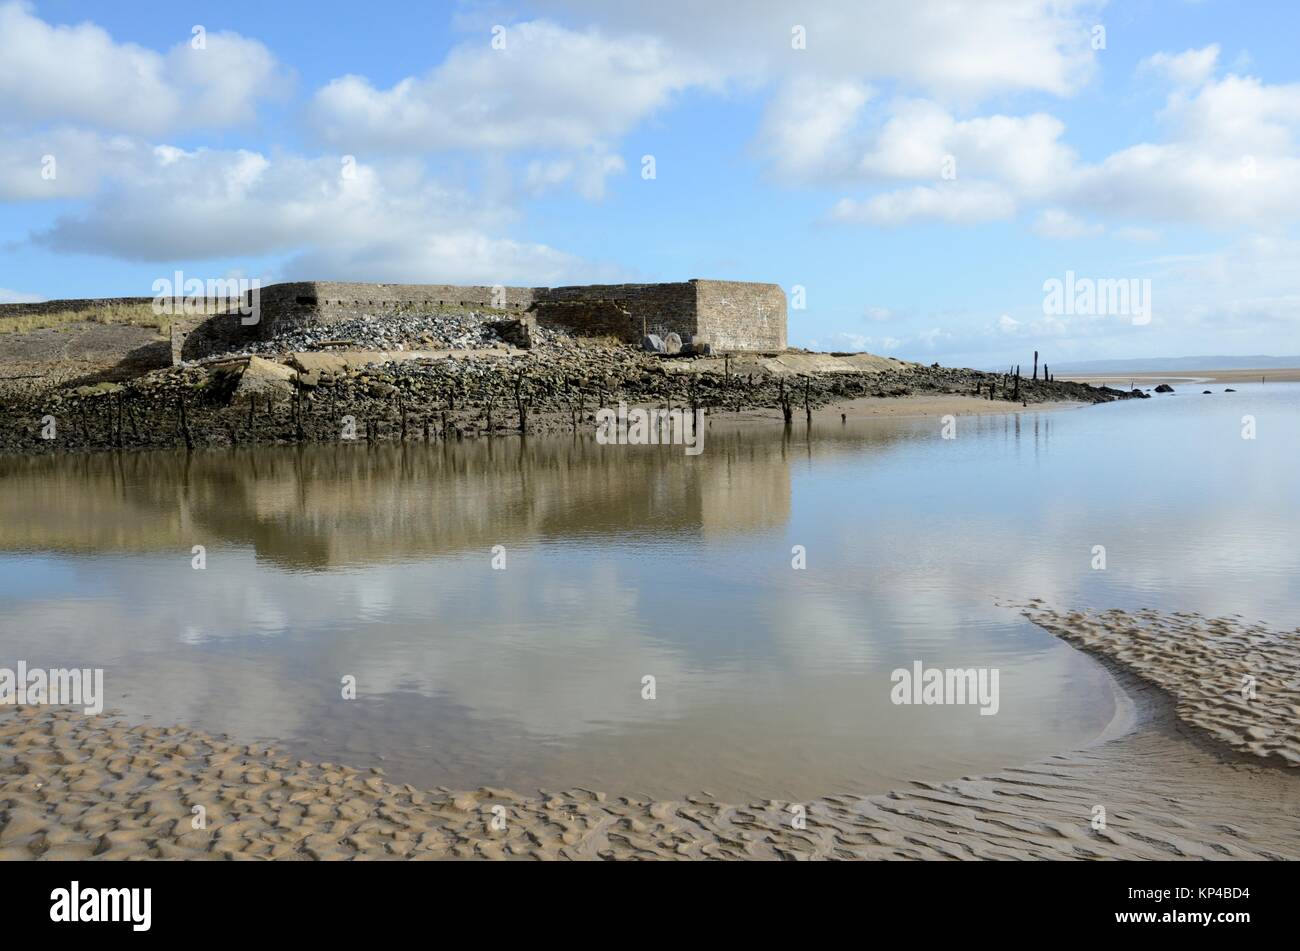 Construit en 1819 le port de Pembrey inscrite comme Monument Historique d'importance par l'estuaire CADW Burry millénaire côte du Pays de Galles Banque D'Images